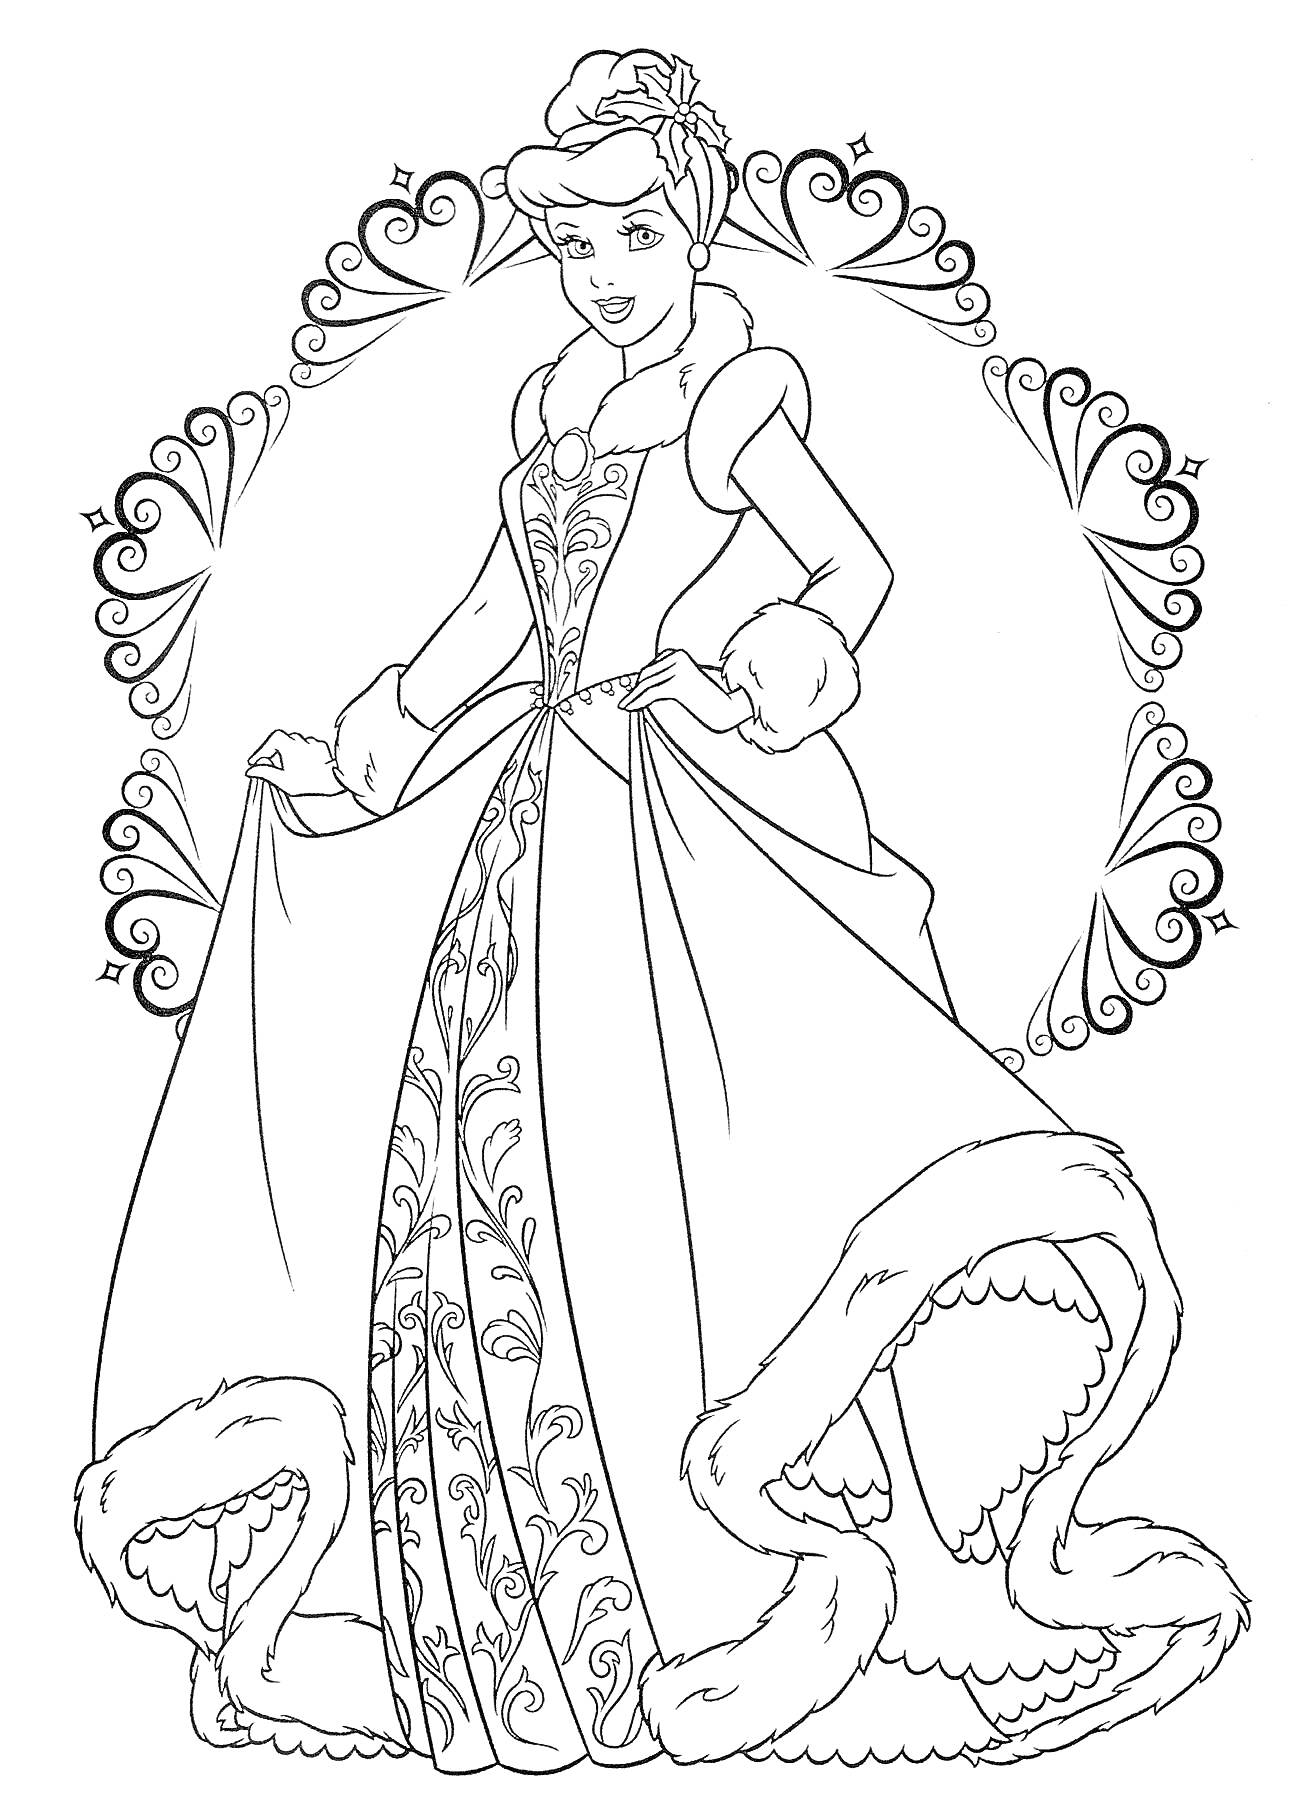 Принцесса в элегантном платье с узорами, стоящая в обрамлении узорчатых сердечек